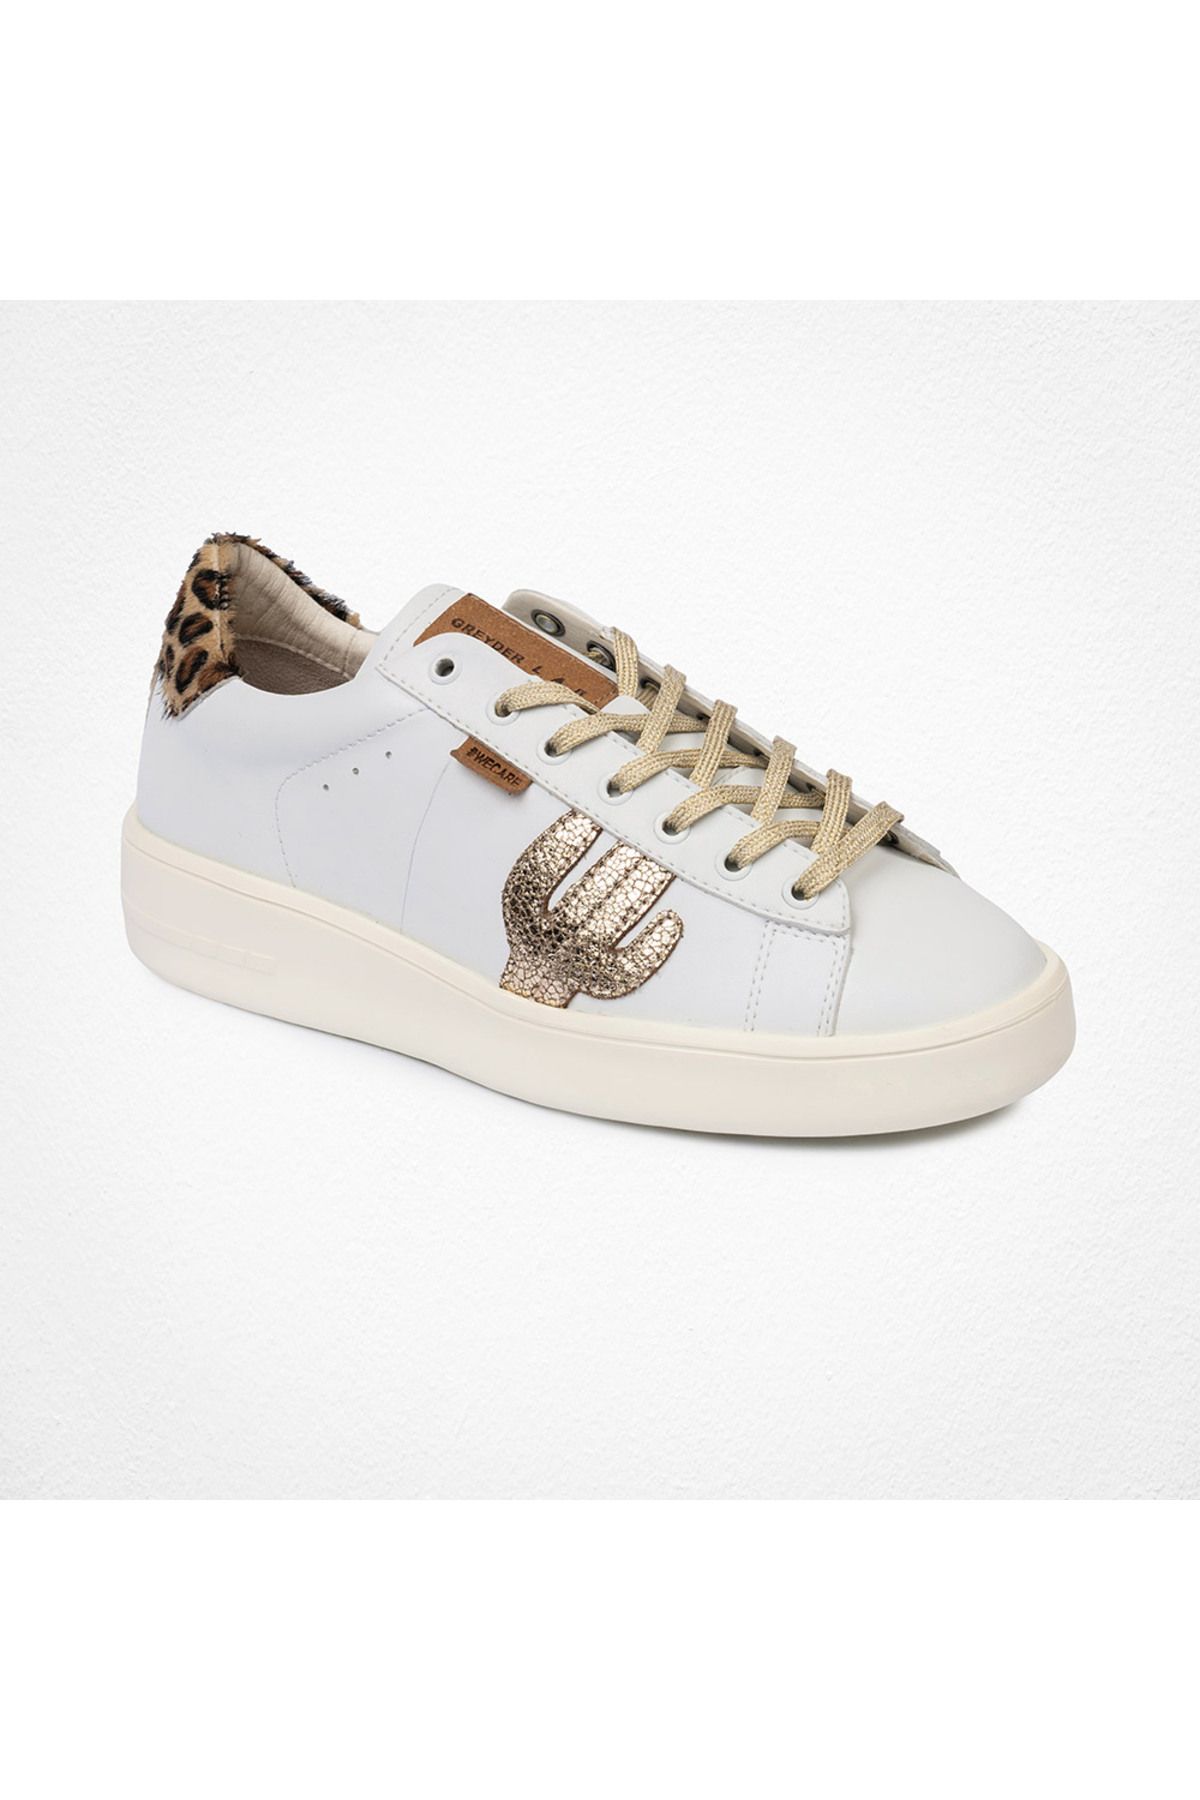 Greyder Lab Kadın Altın Sneaker Ayakkabı 4y2sa45201